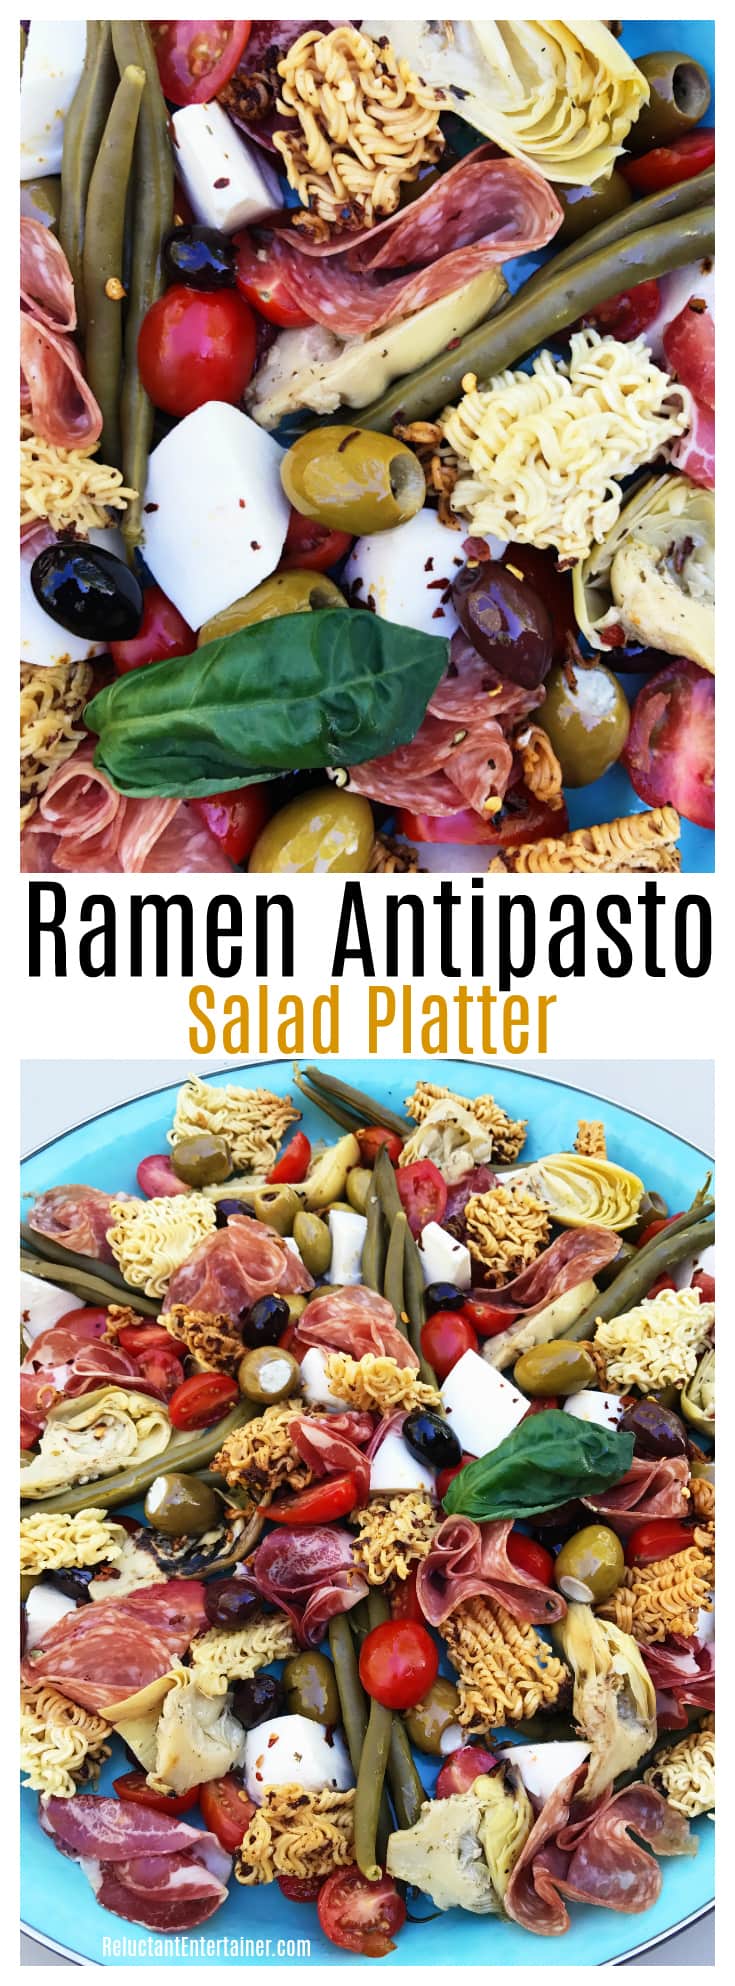 Ramen Antipasto Salad Platter Recipe